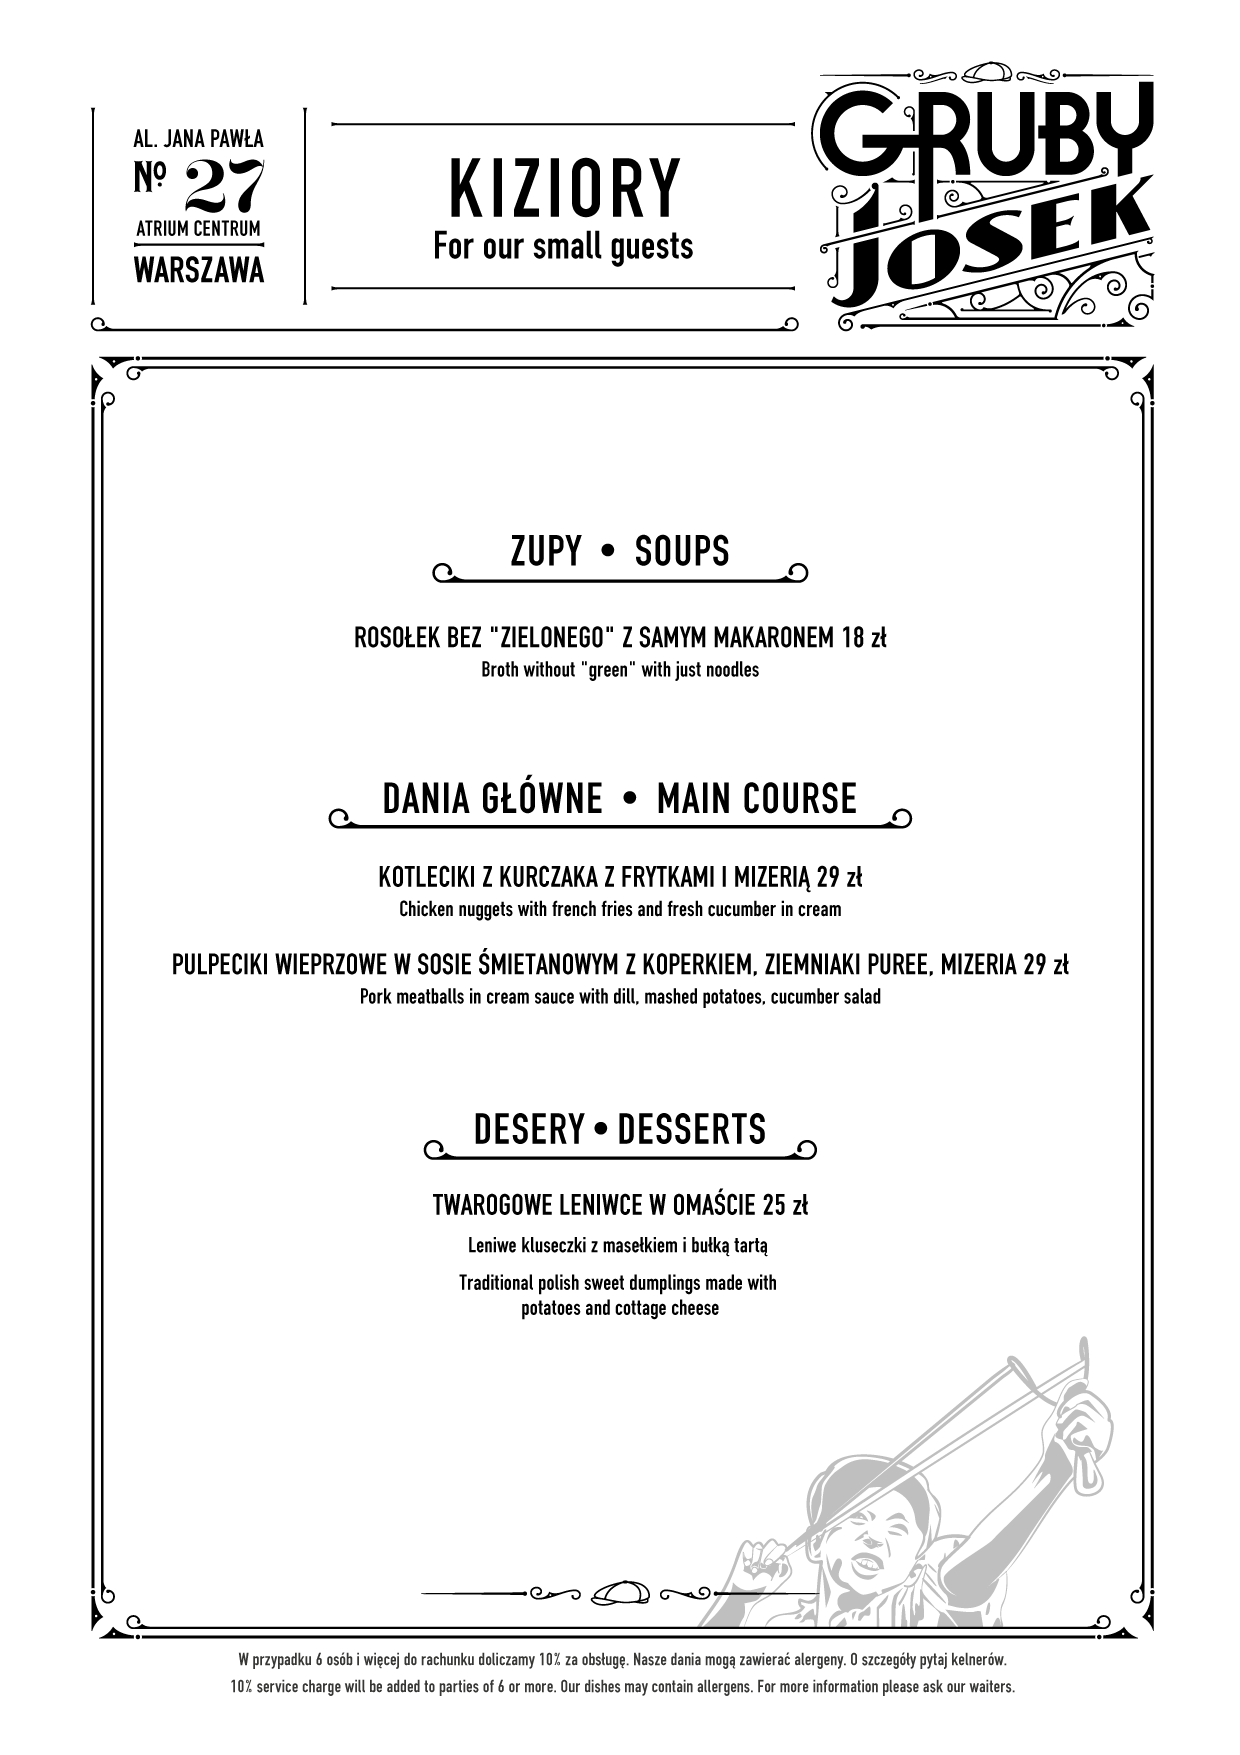 Gruby Josek - menu5